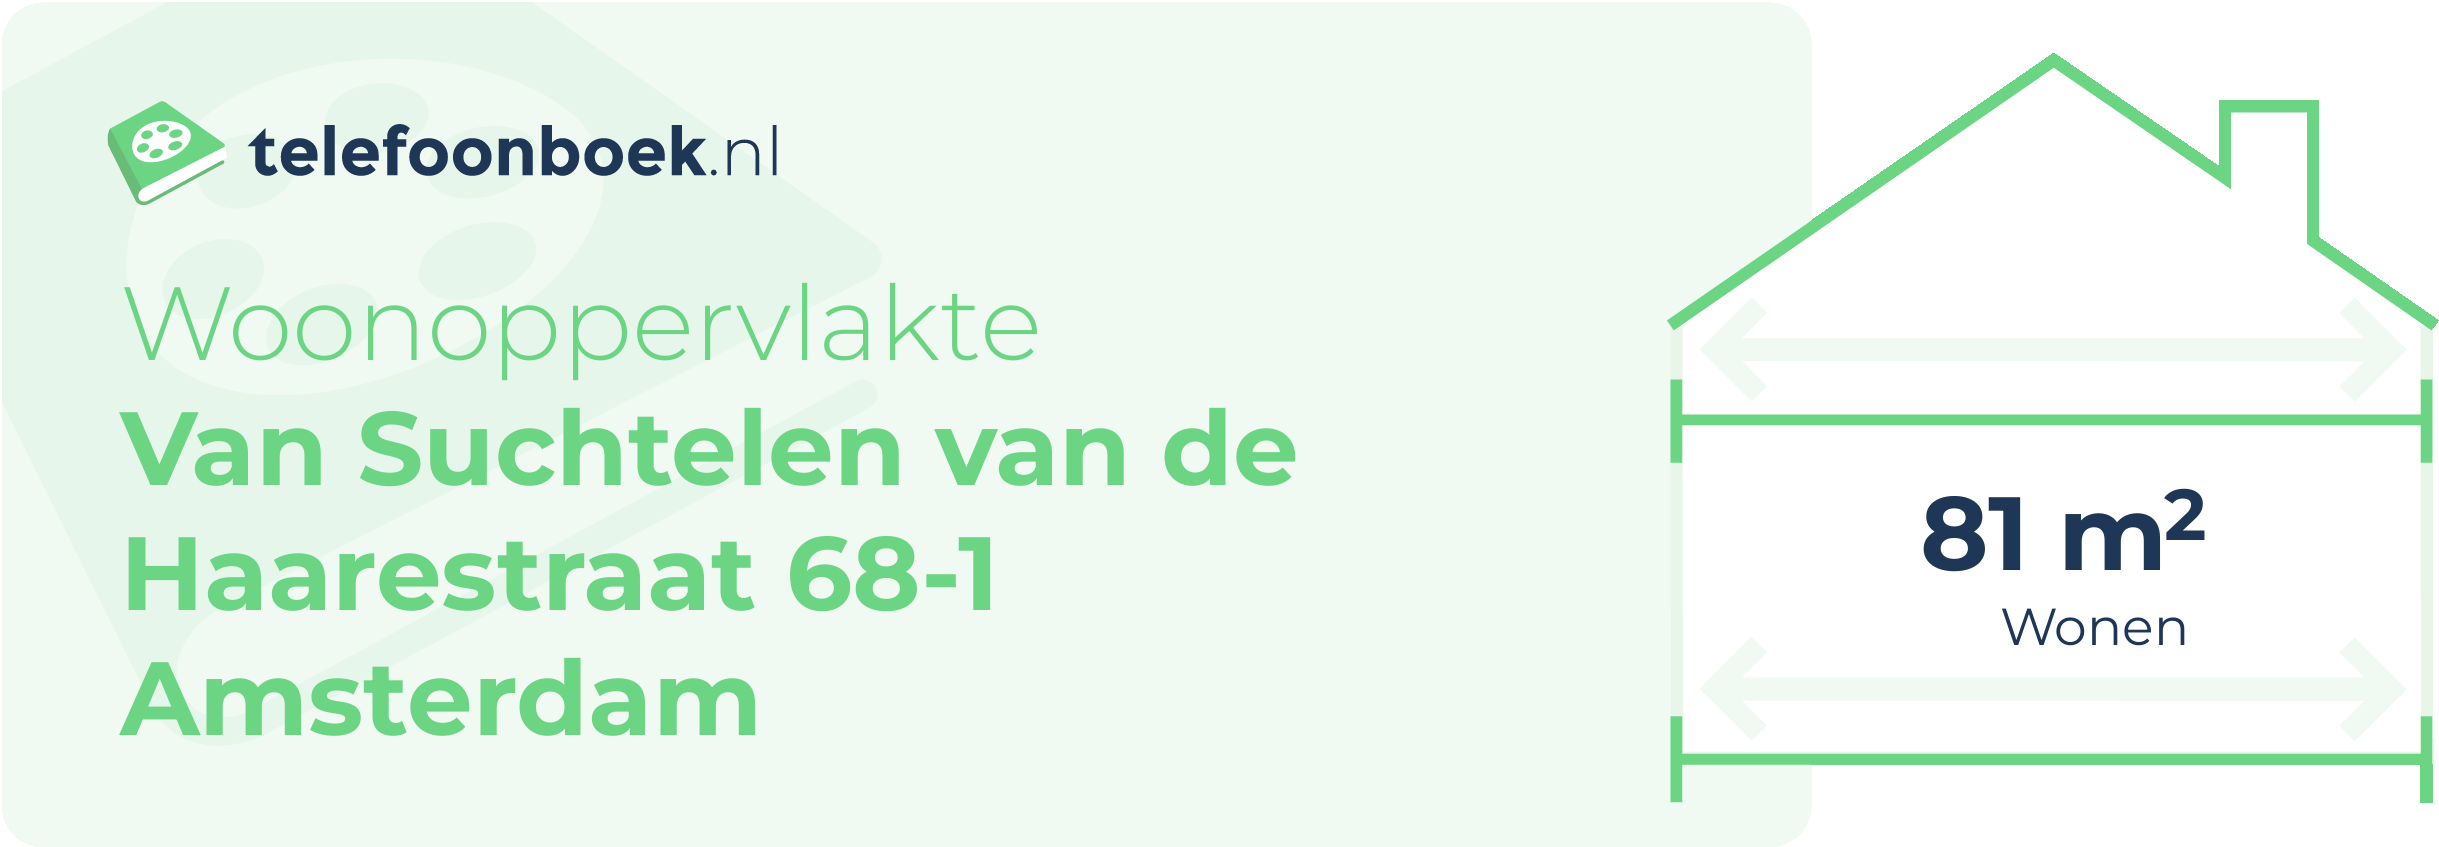 Woonoppervlakte Van Suchtelen Van De Haarestraat 68-1 Amsterdam